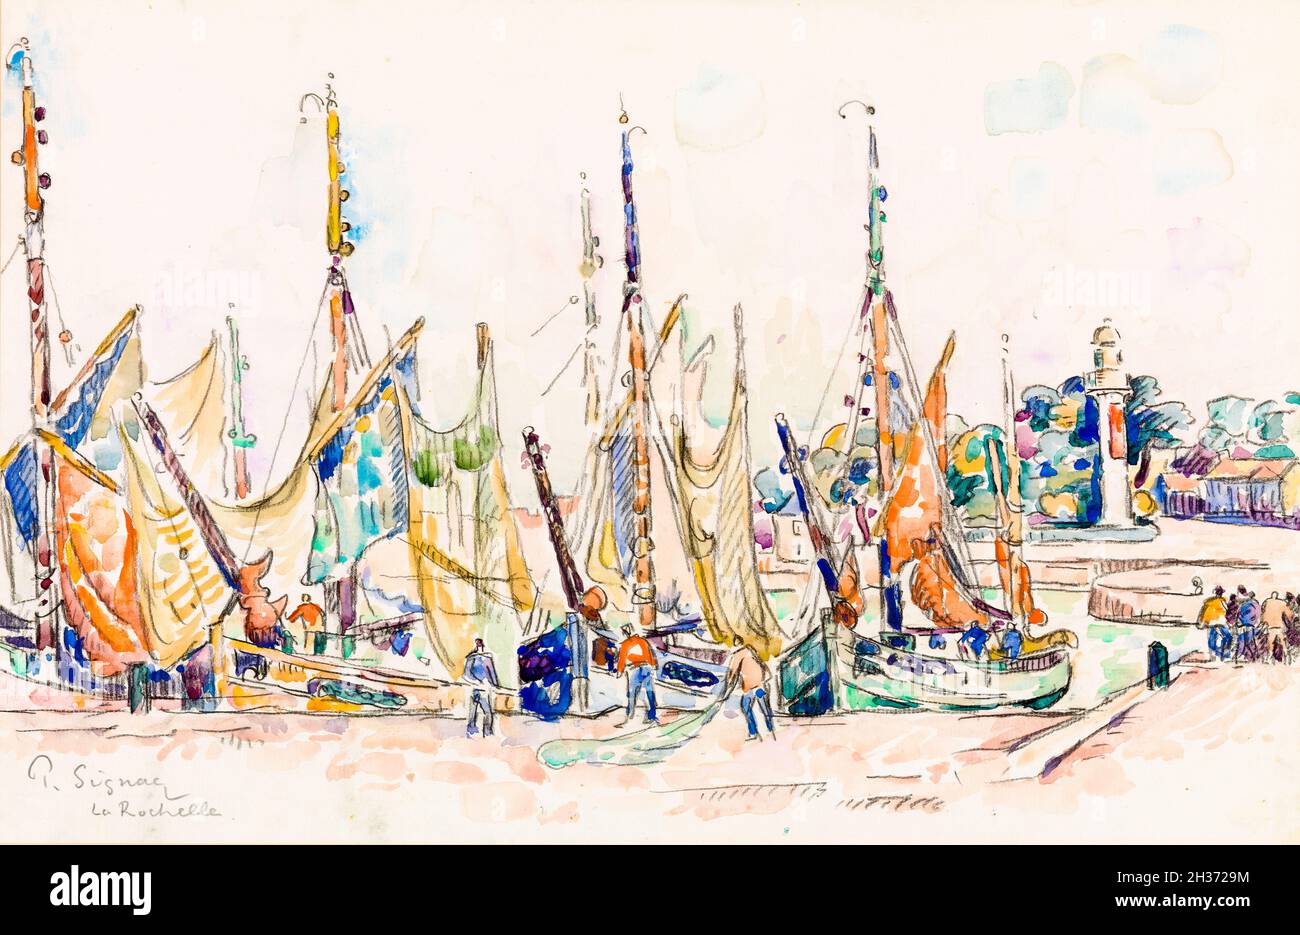 Paul Signac, la Rochelle, peinture de paysage, vers 1911 Banque D'Images